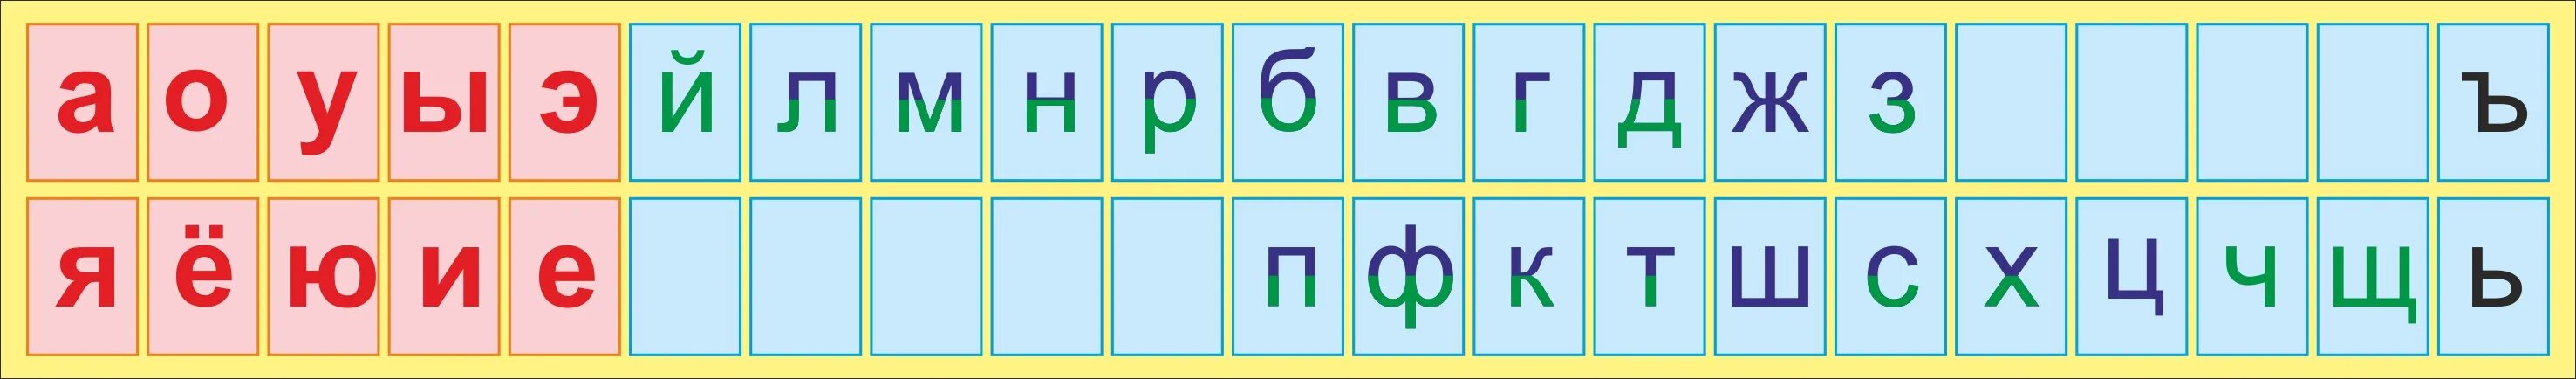 3 х буквенные слова. Алфавит гласные и согласные буквы. Лента букв. Русский алфавит с гласными и согласными буквами. Азбука гласных и согласных букв.